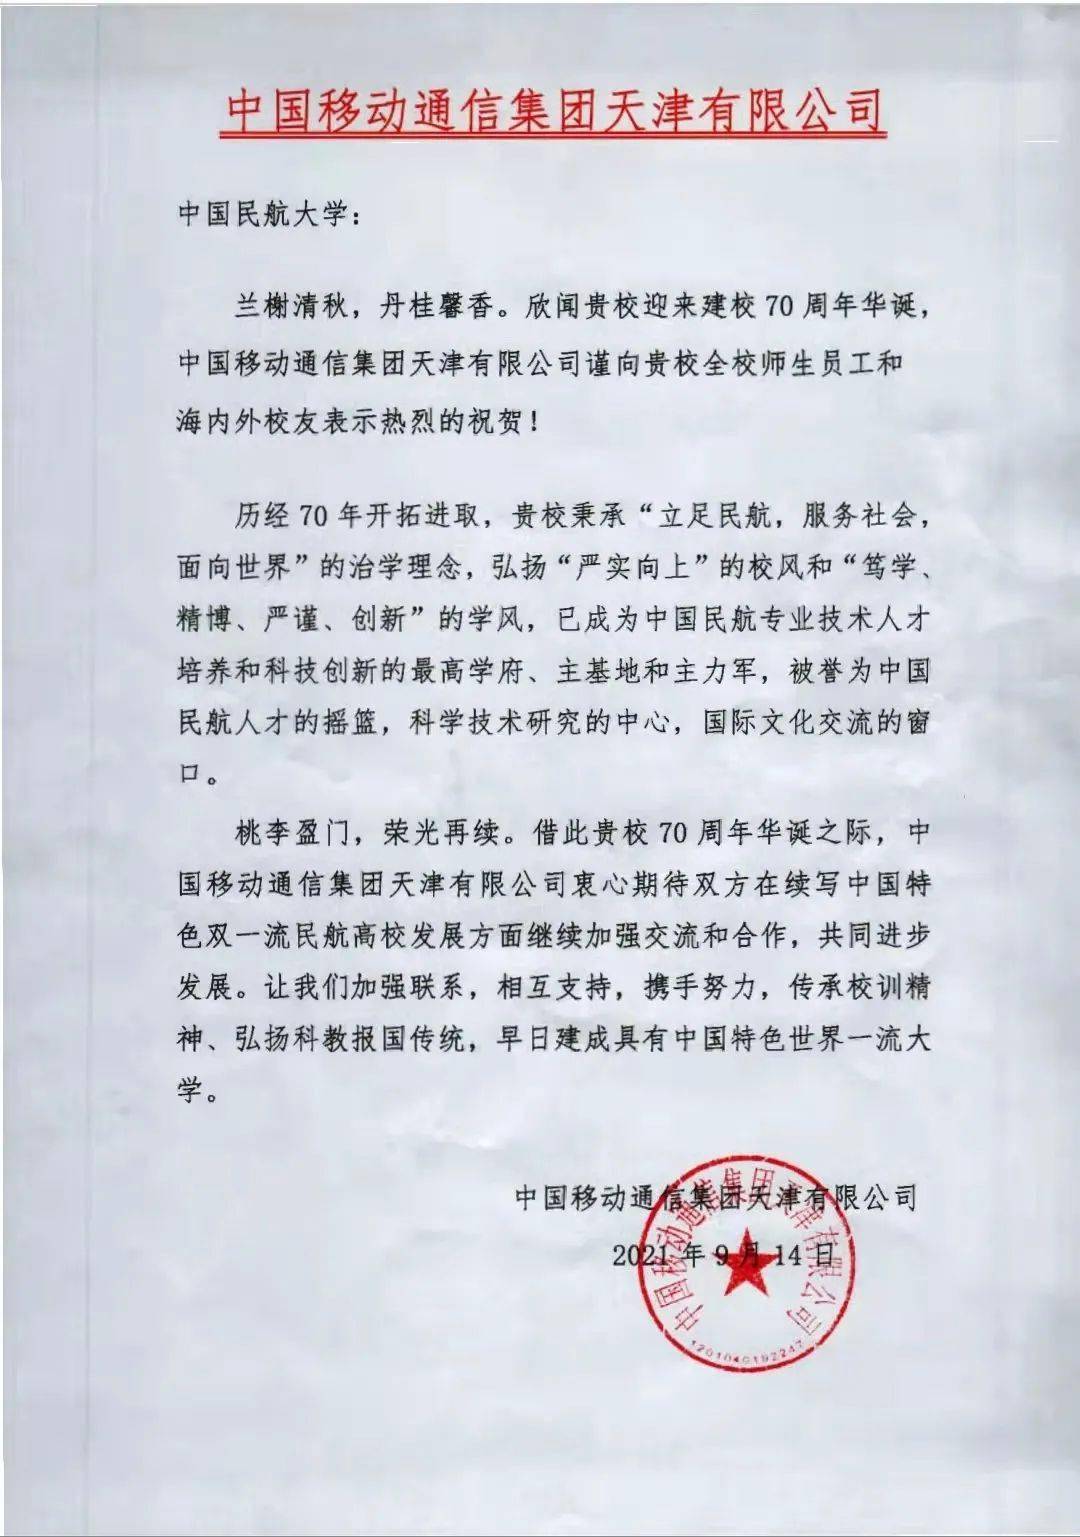 【70周年校庆】中国移动通信集团天津有限公司发来贺信!